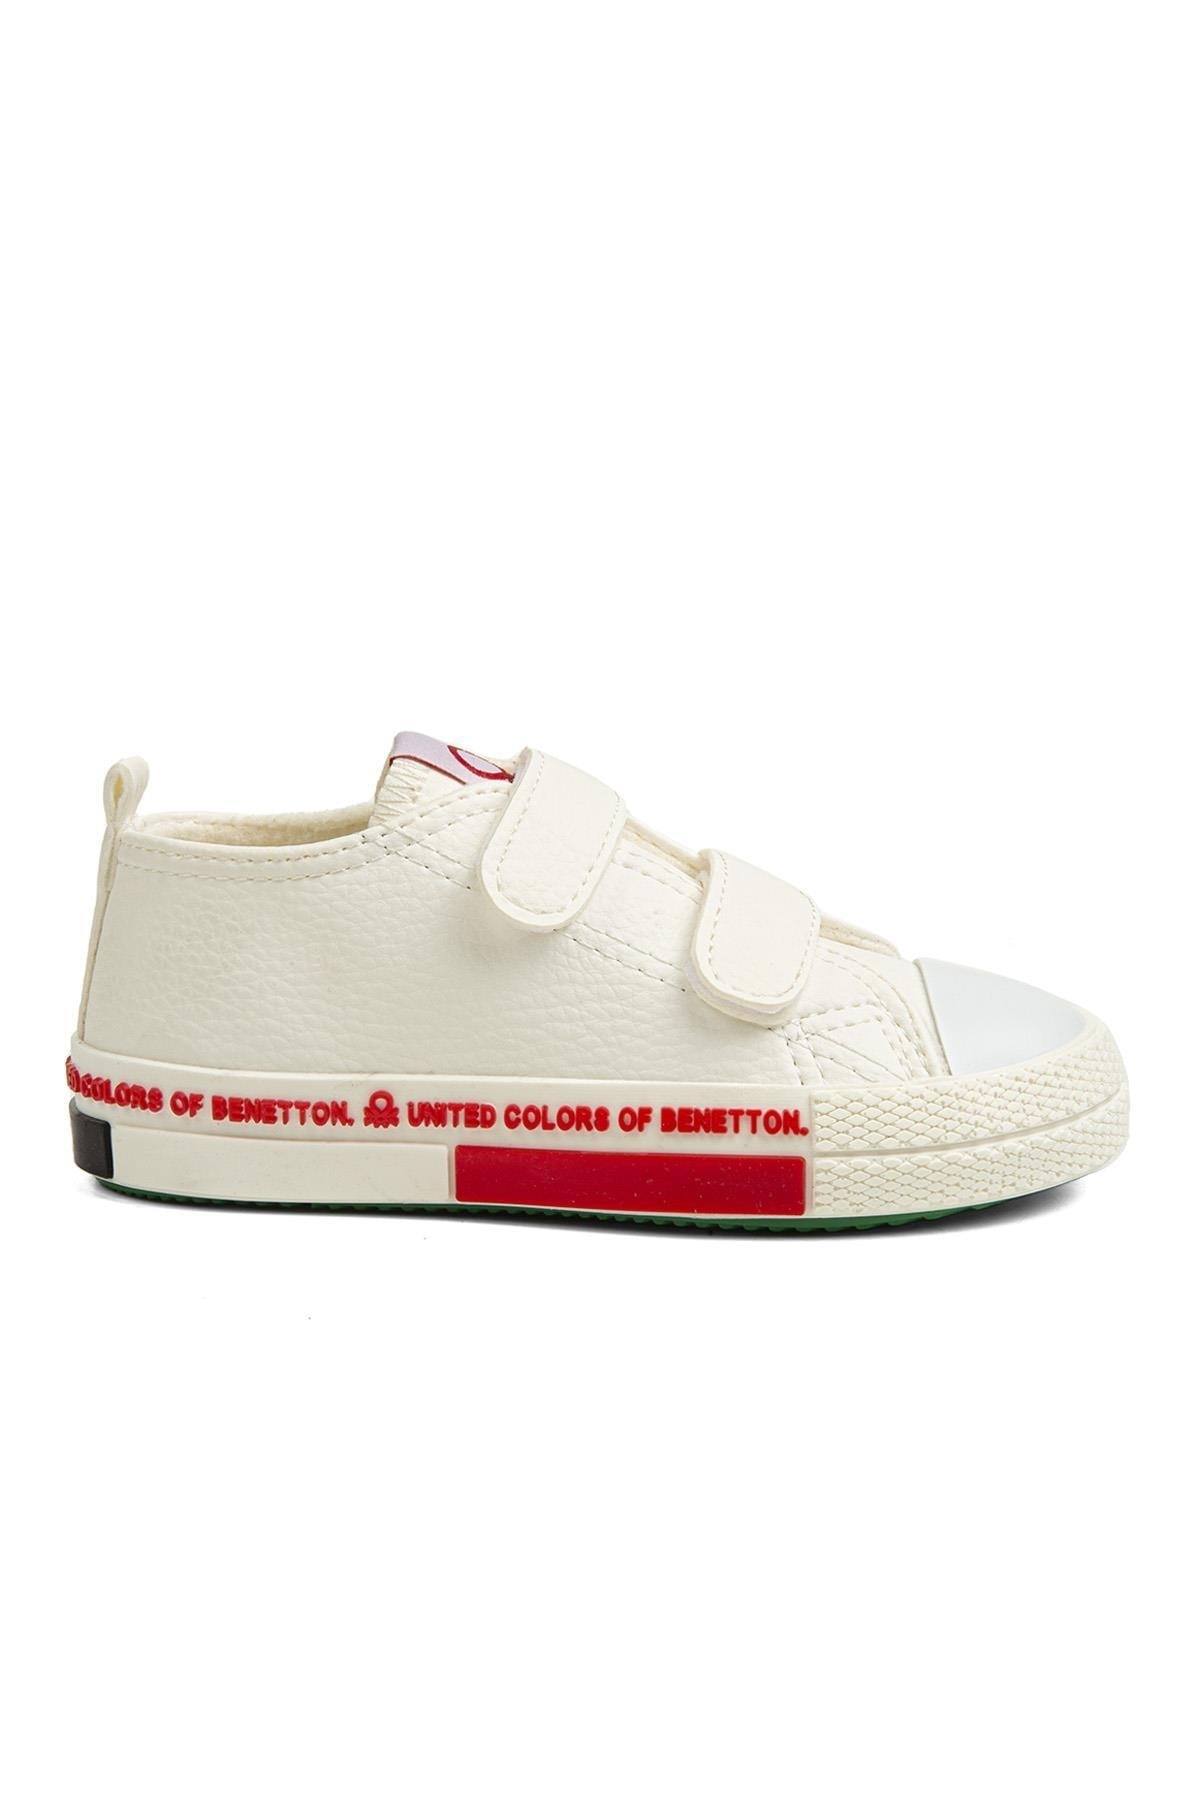 Benetton ® | Bn-30787 - 3394 Beyaz - Çocuk Spor Ayakkabı